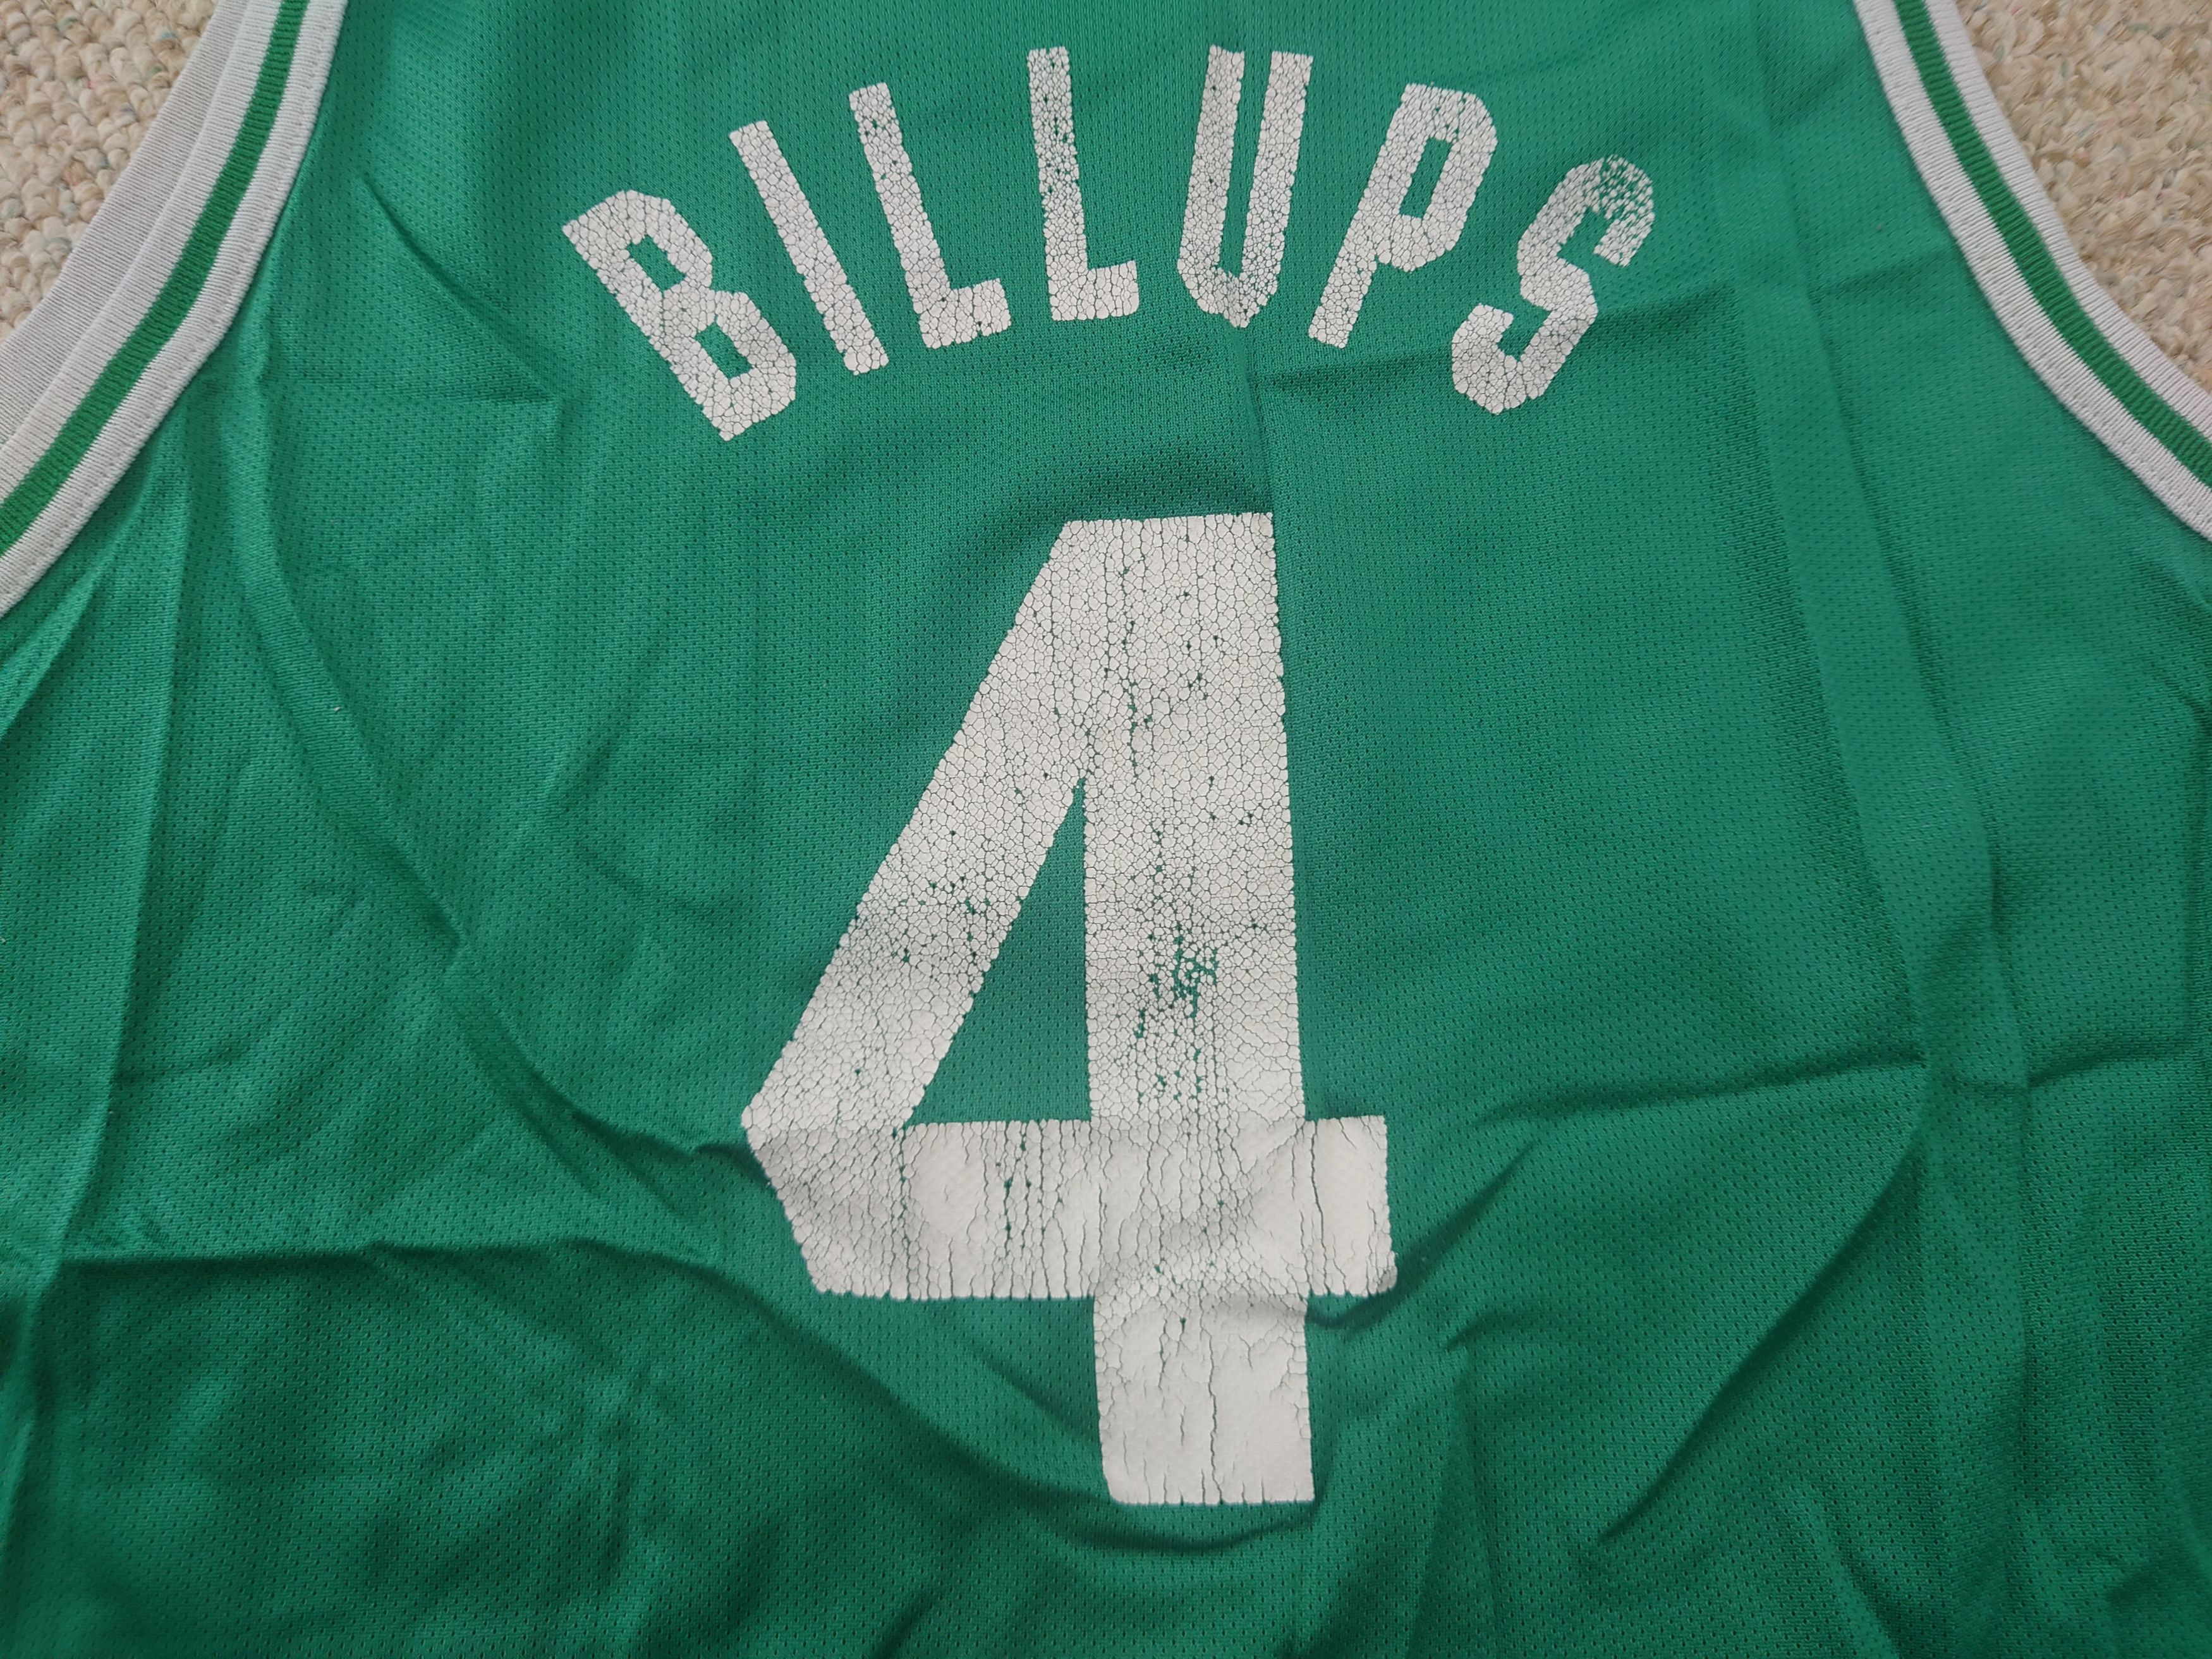 Vintage Vintage Chauncey Billups Celtics Jersey Size US M / EU 48-50 / 2 - 7 Preview